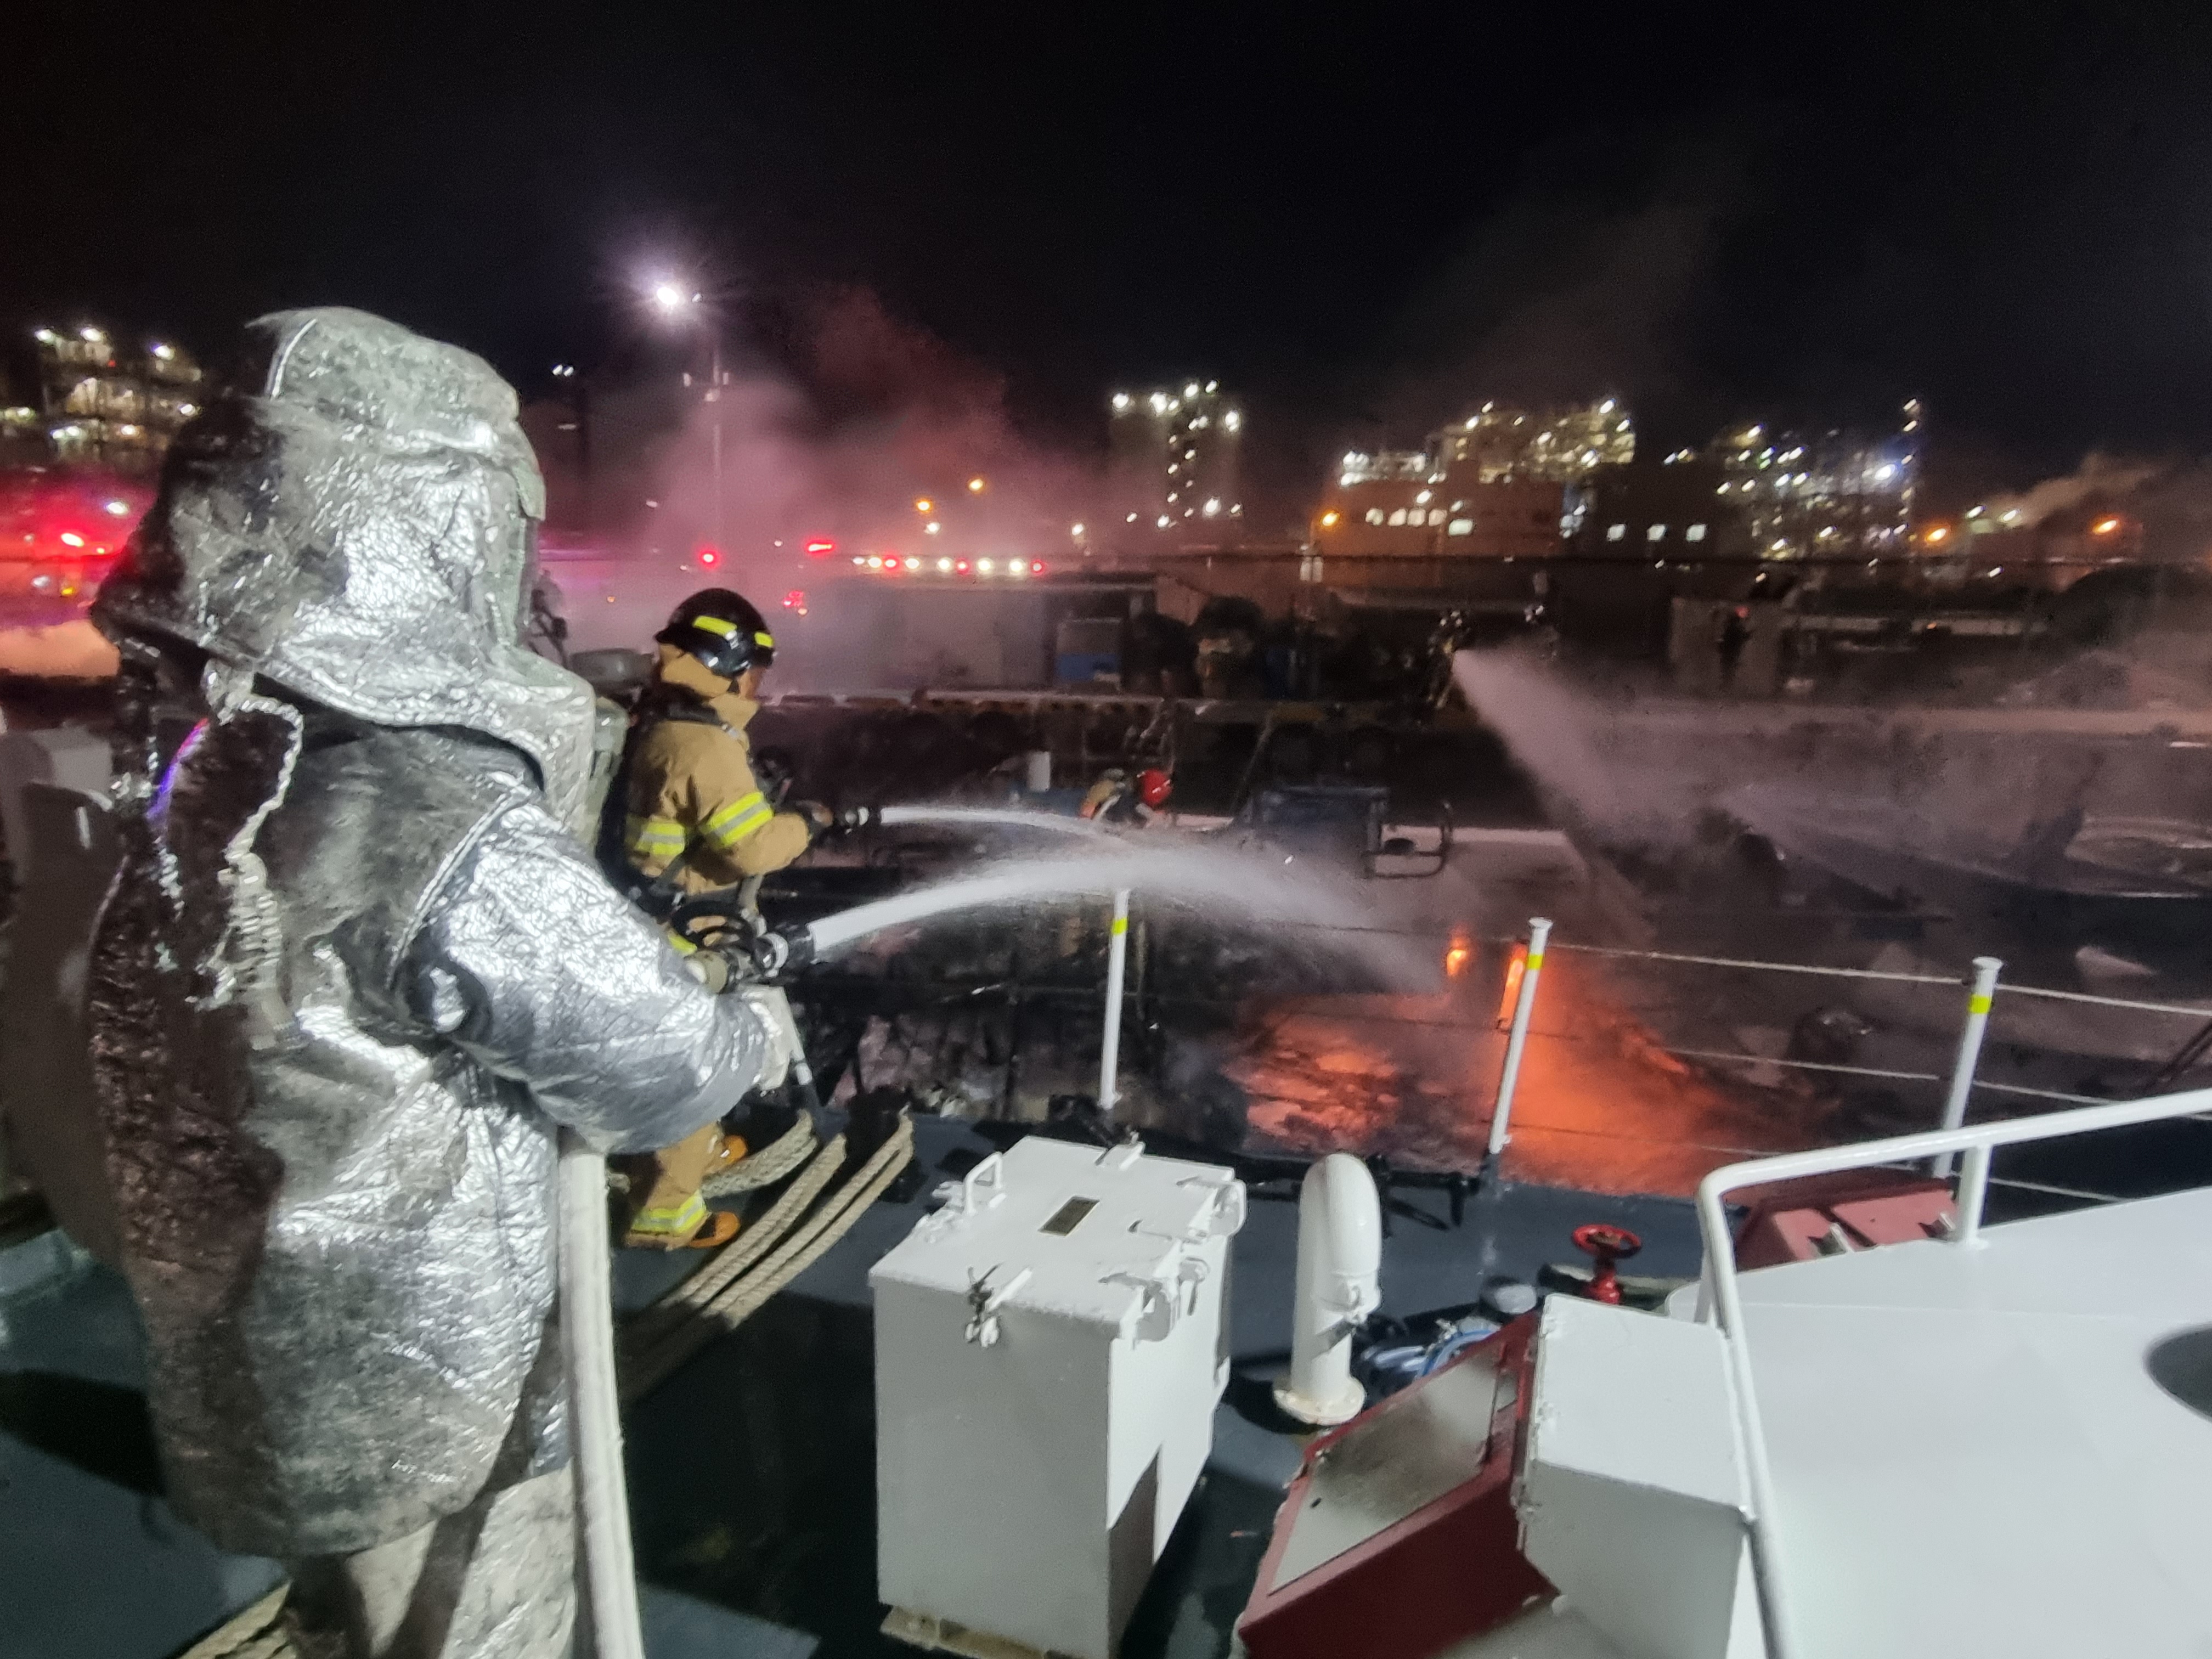 3일 오전 2시쯤 울산 남구 성외항에 정박 중이던 어선에서 화재가 발생했다. 출동한 해경과 소방대원들이 불을 끄고 있다. 울산해양경찰서 제공.